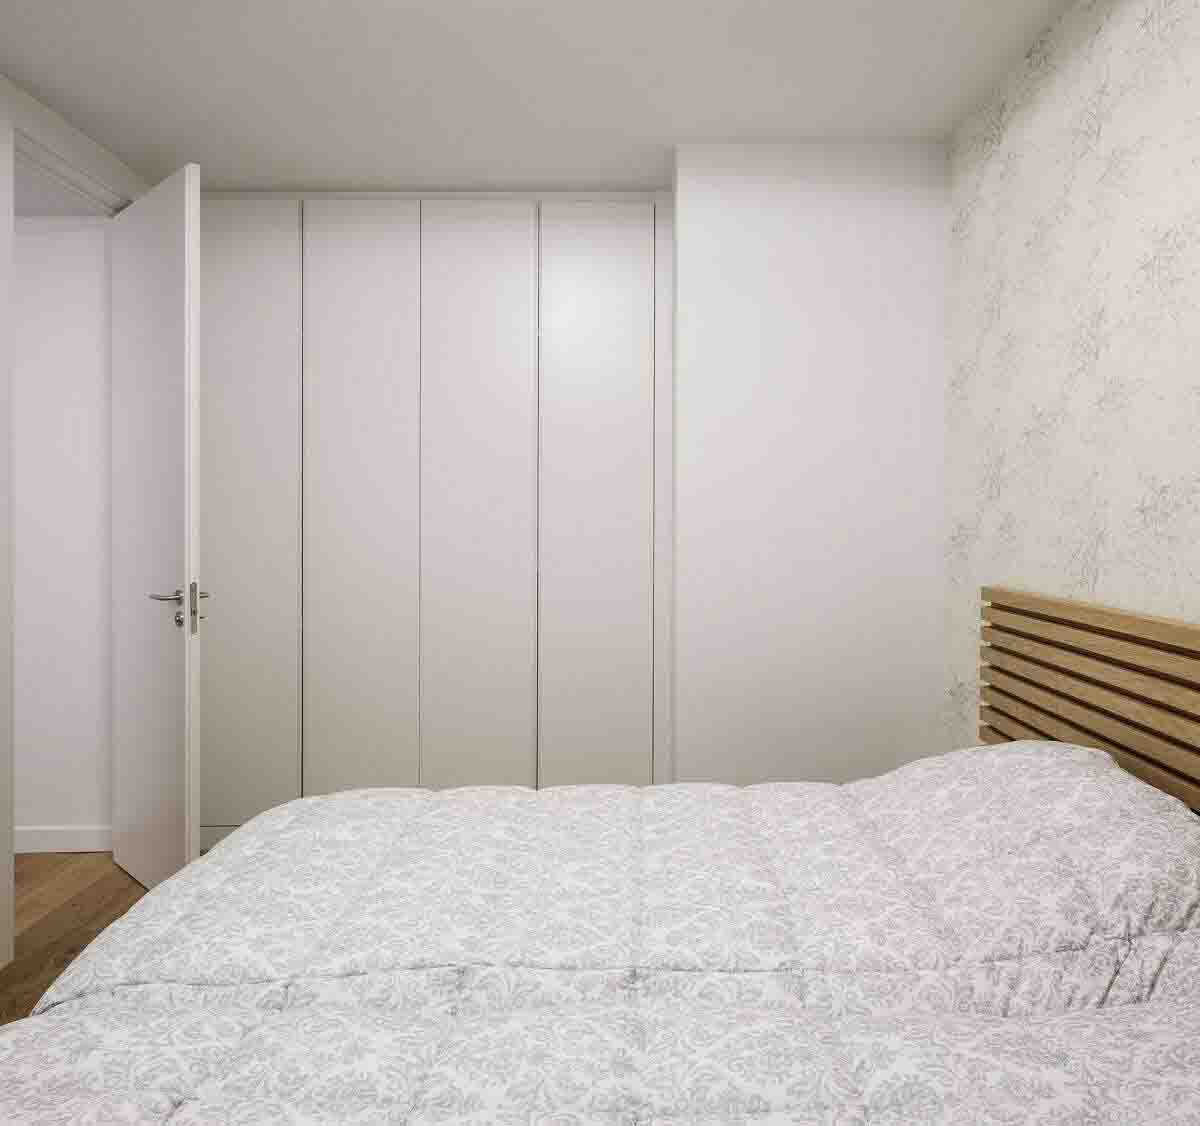 Phòng ngủ nhỏ xinh màu sắc tươi sáng kết hợp với hệ tủ âm tường kín đáo giúp căn phòng như rộng gấp đôi